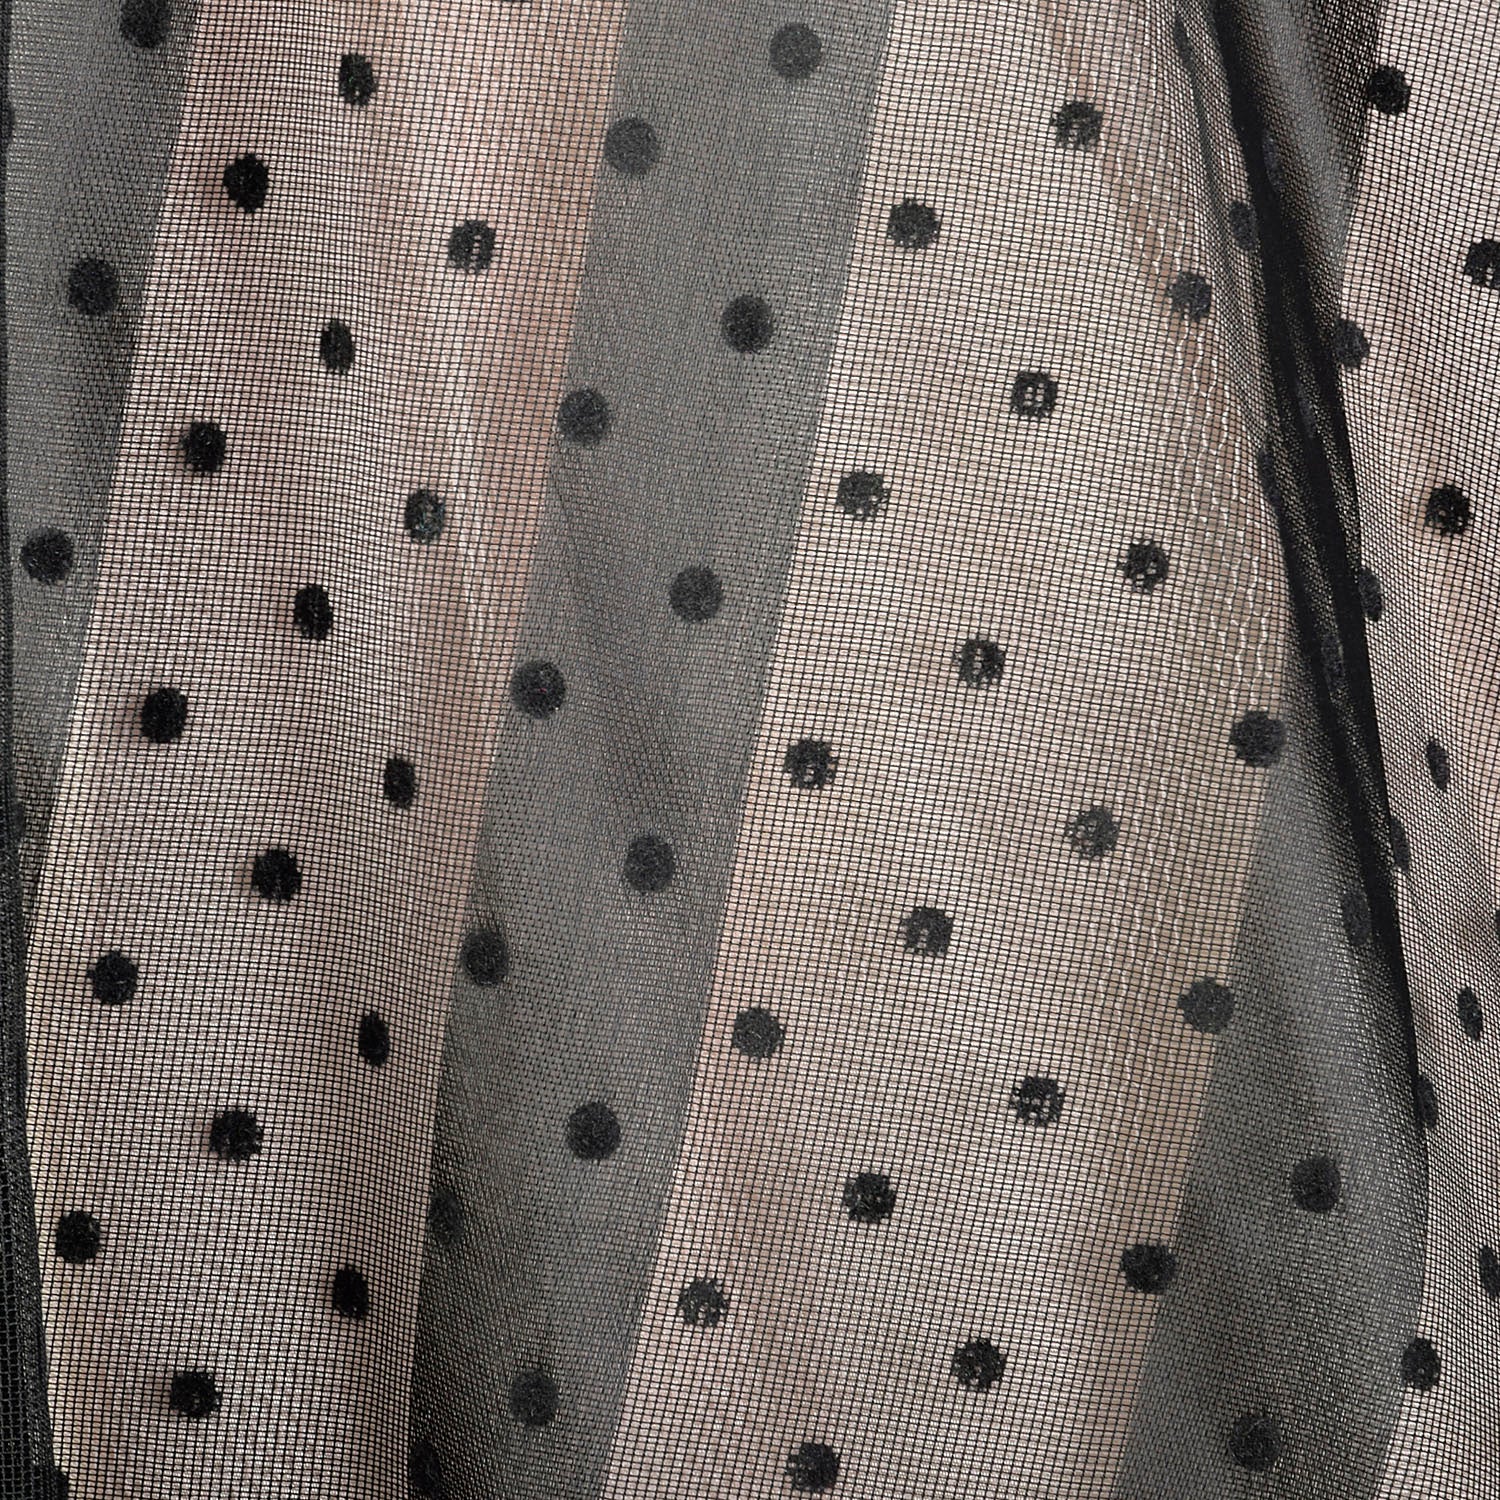 XS 1950s Black Strapless Striped Polka Dot Fit & Flare Cummerbund Party Prom Dress